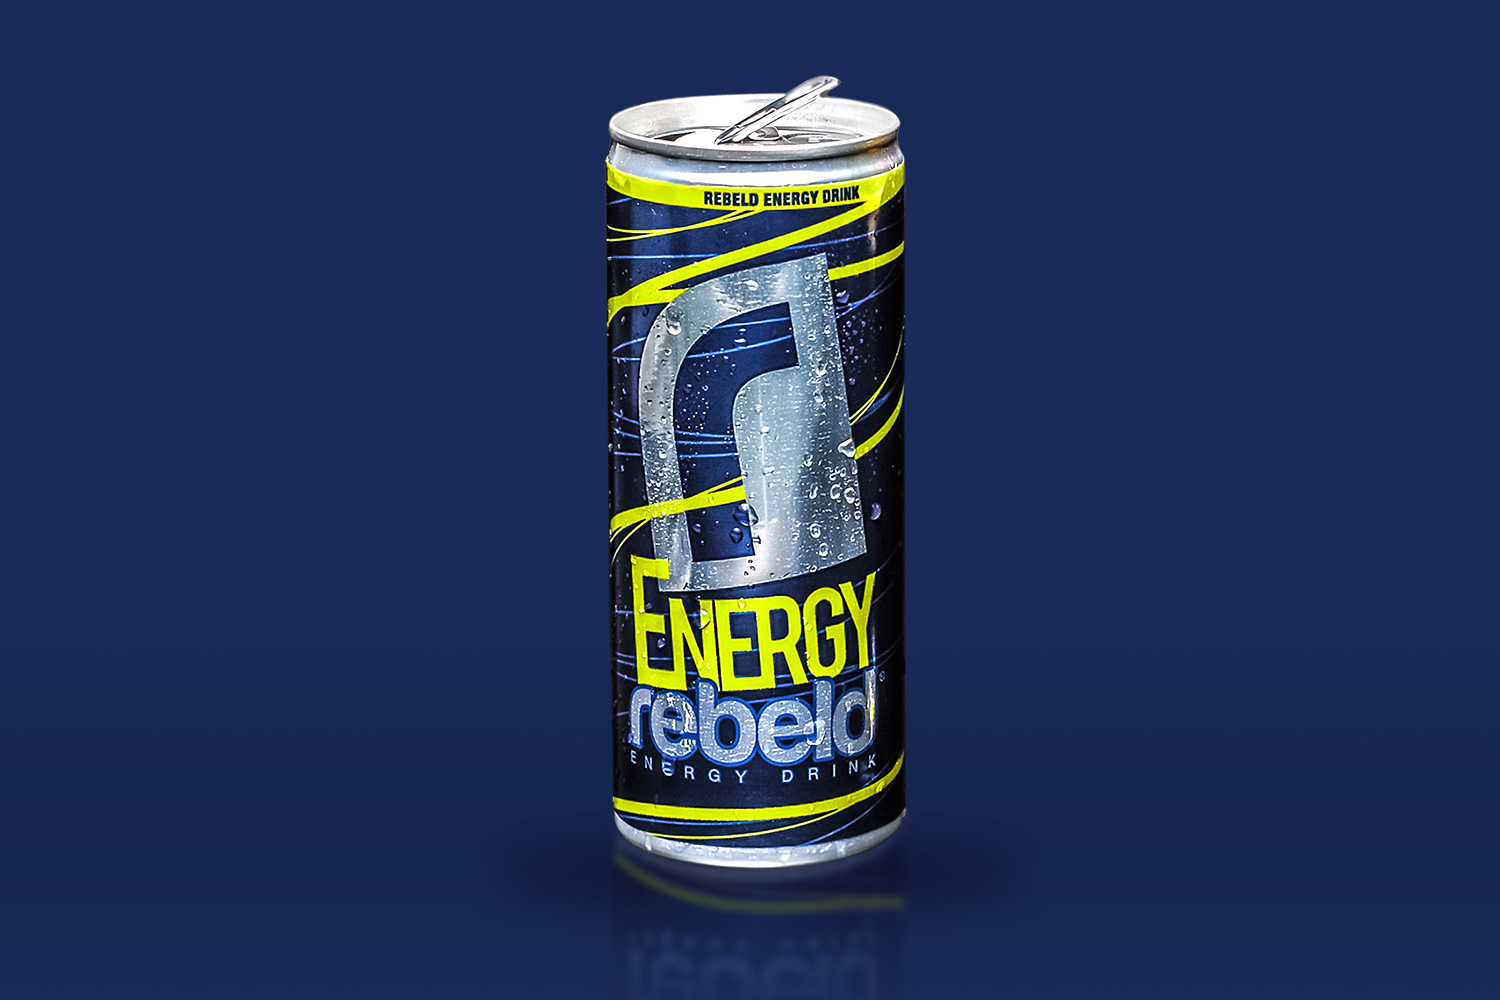 Rebeld Energy Drink